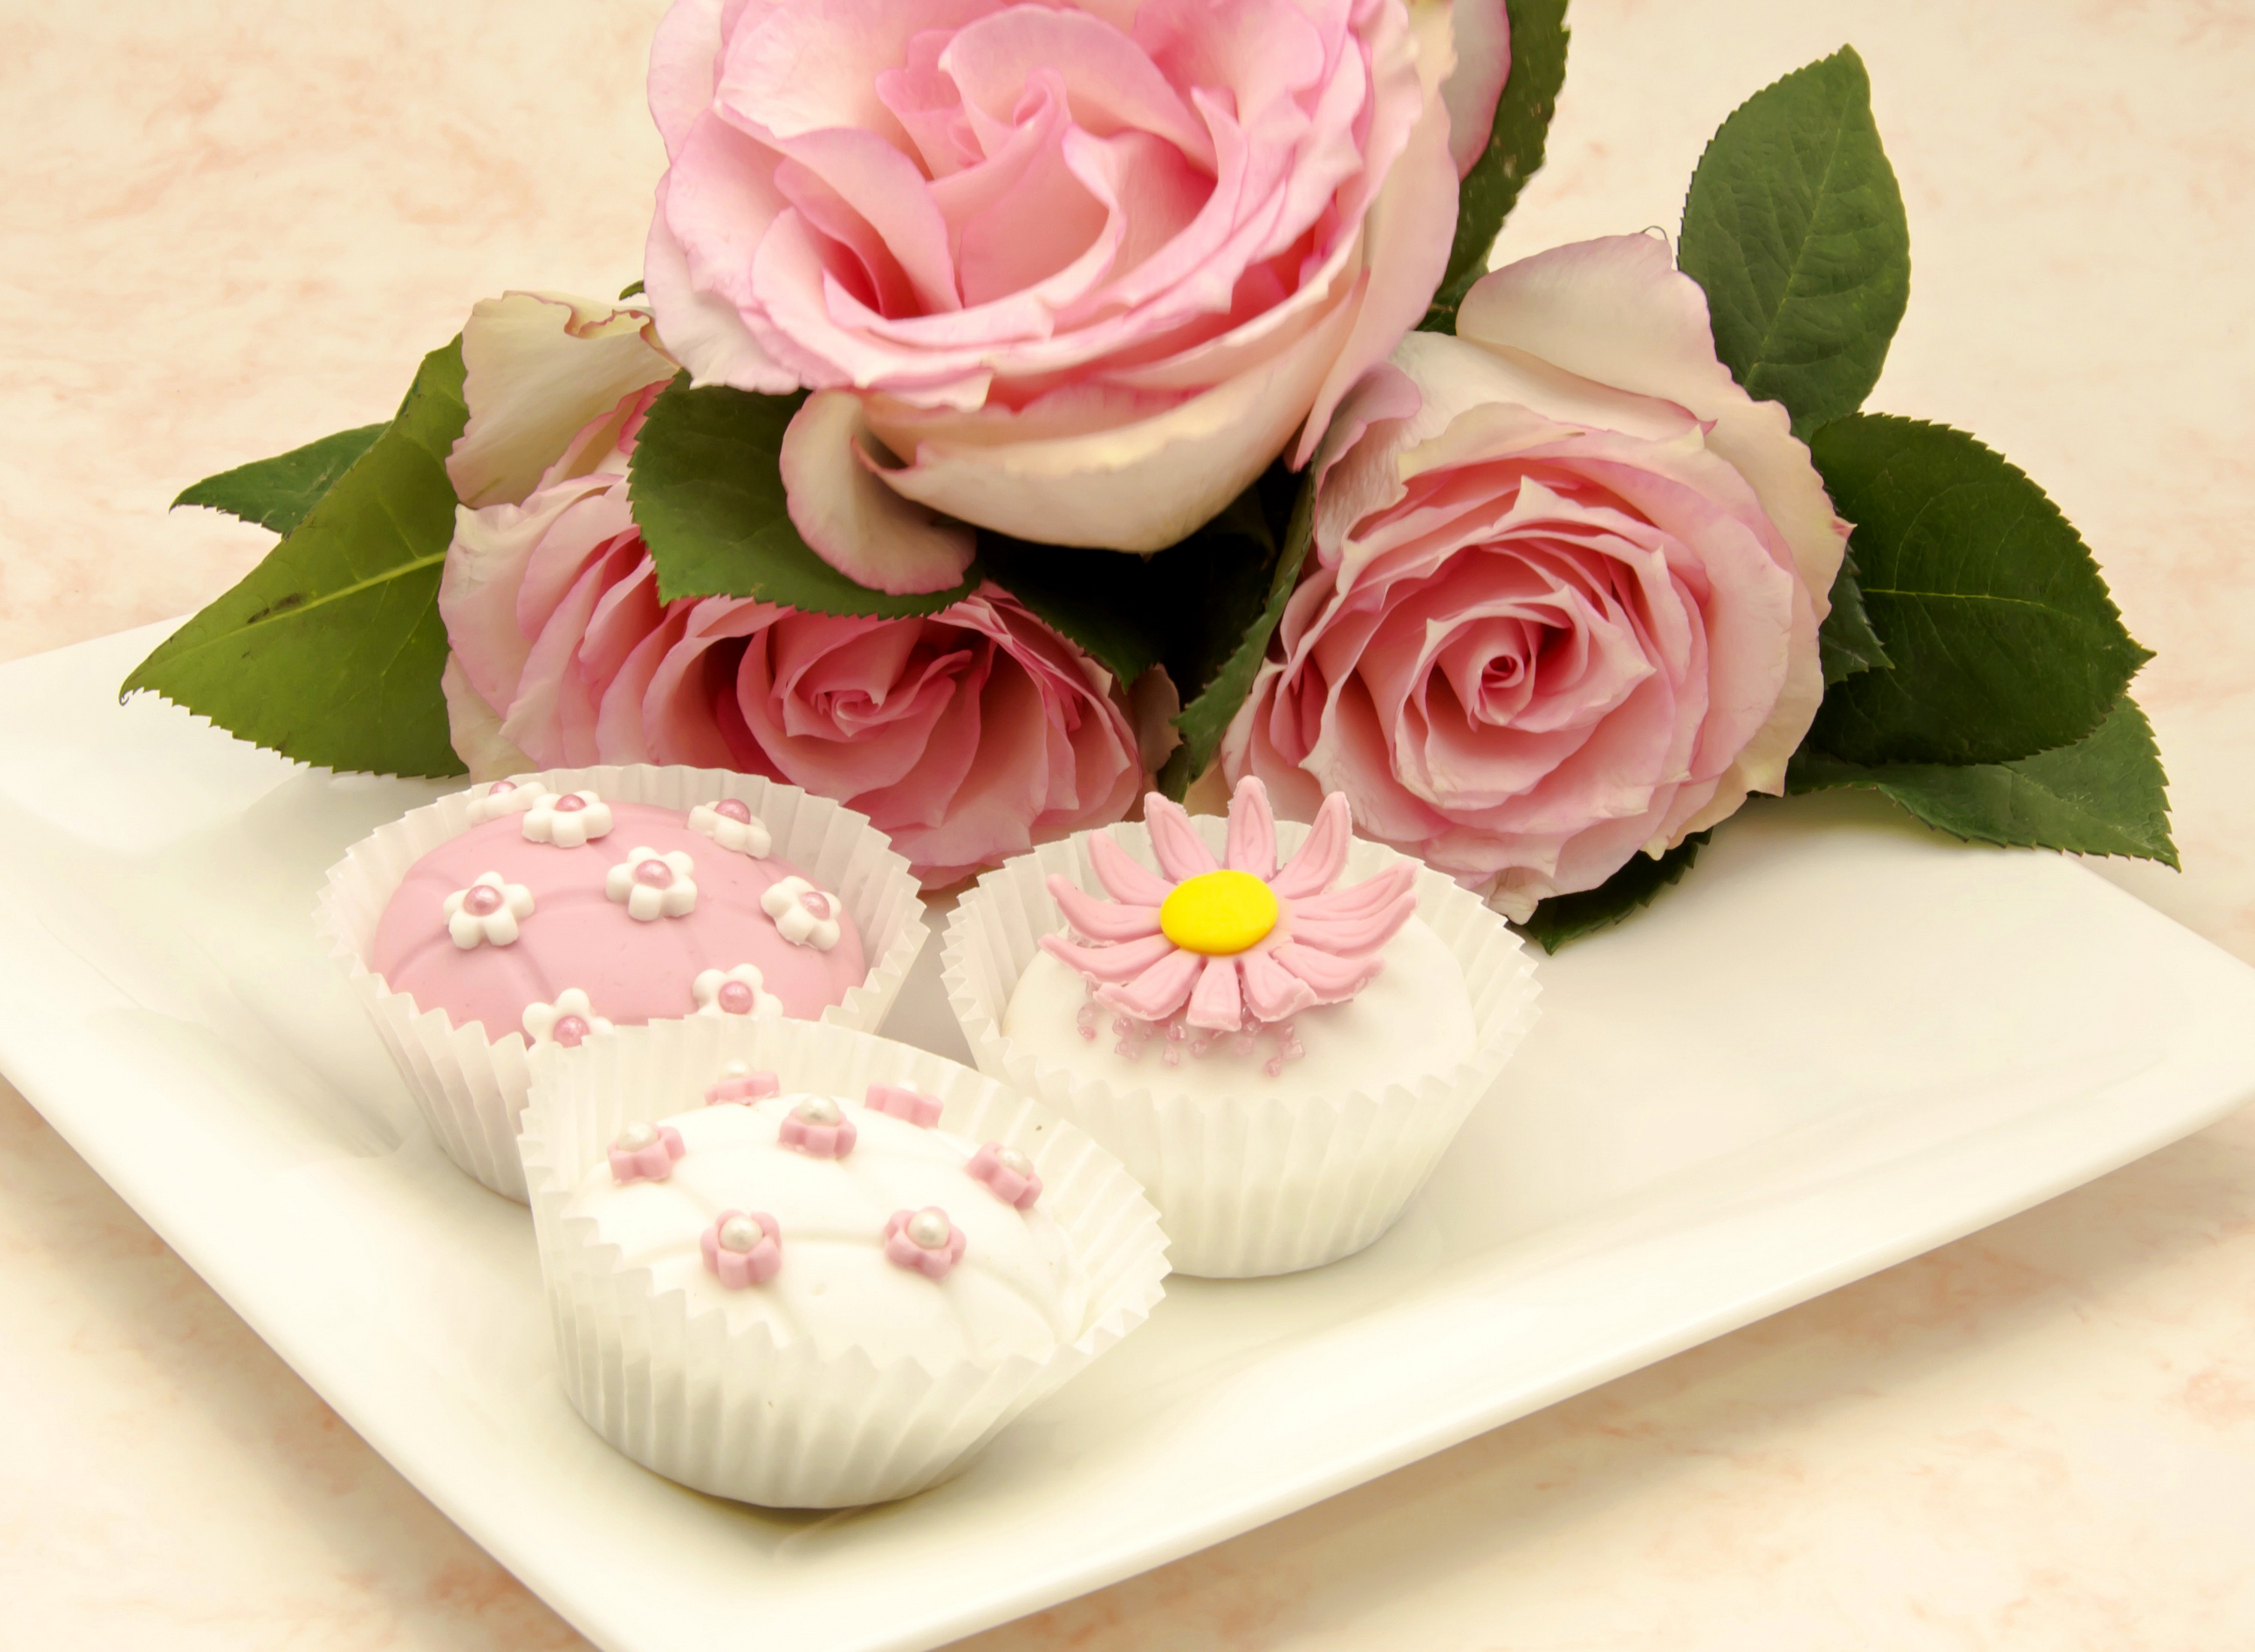 Little cakes. Красивые пирожные. Пирожное красивое. Цветы и пирожные. Пироженки и цветочки.